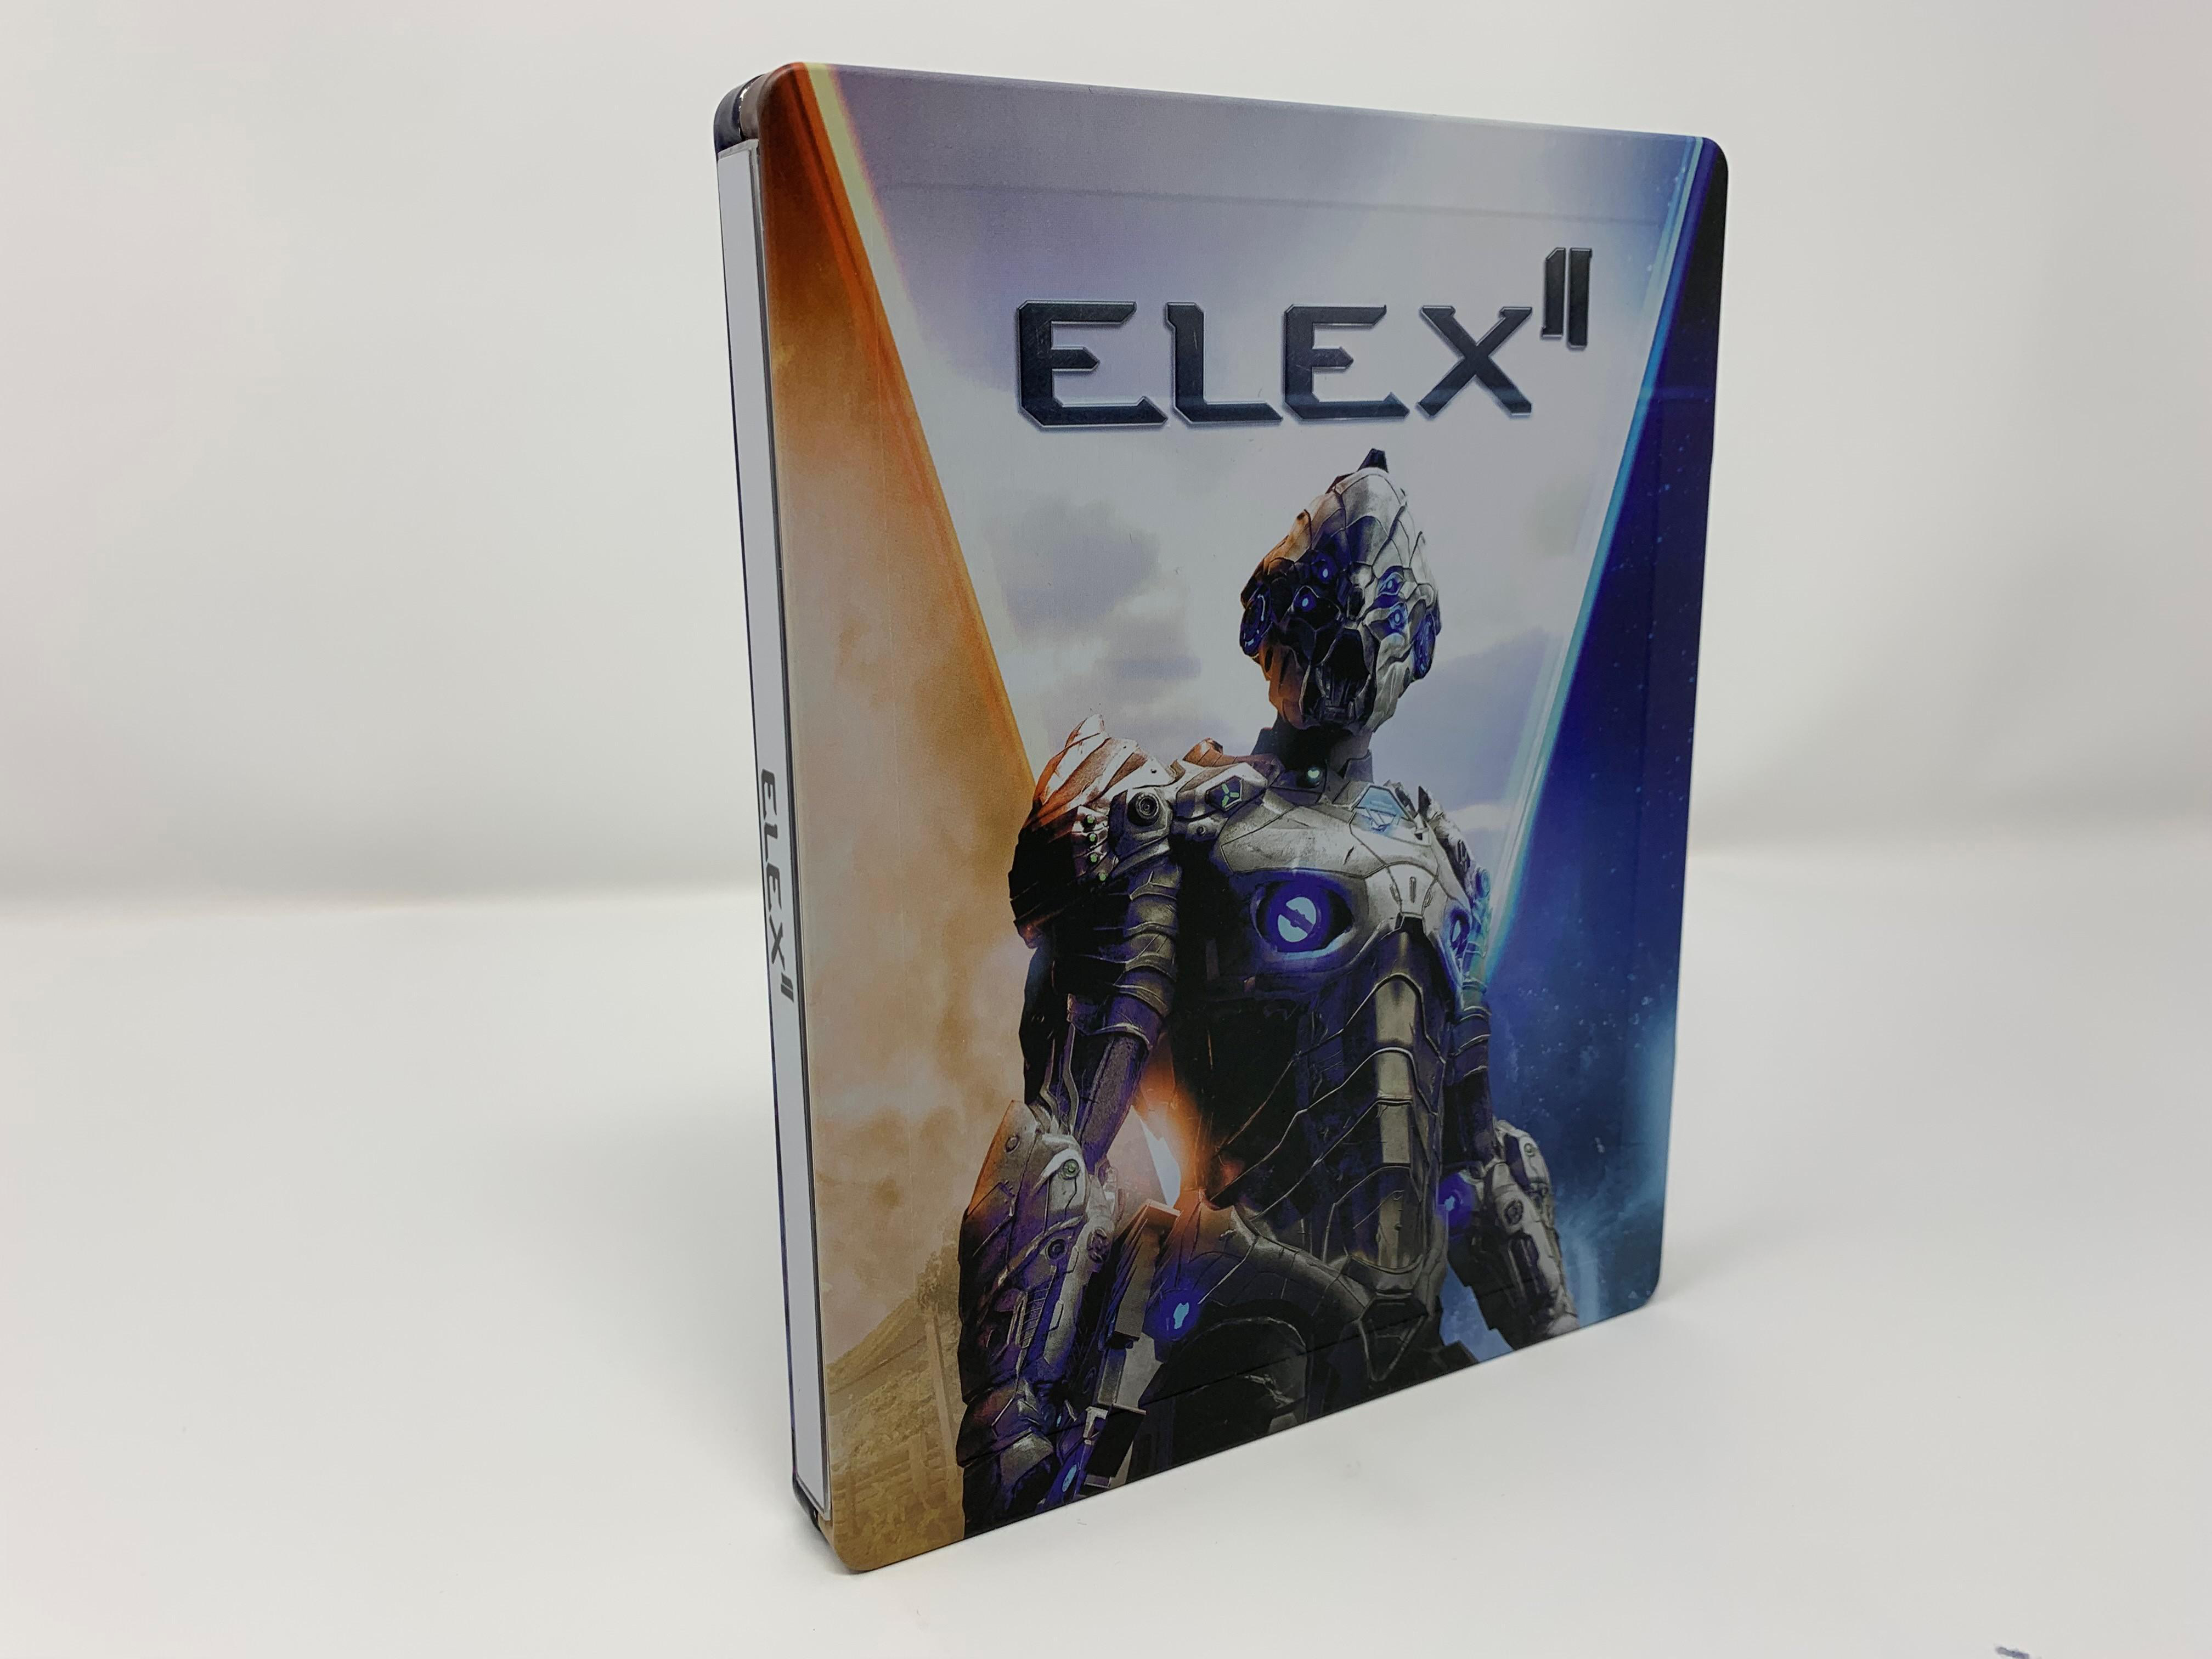 ELEX II - Day 1 - Steelbook [PlayStation 5] Edition